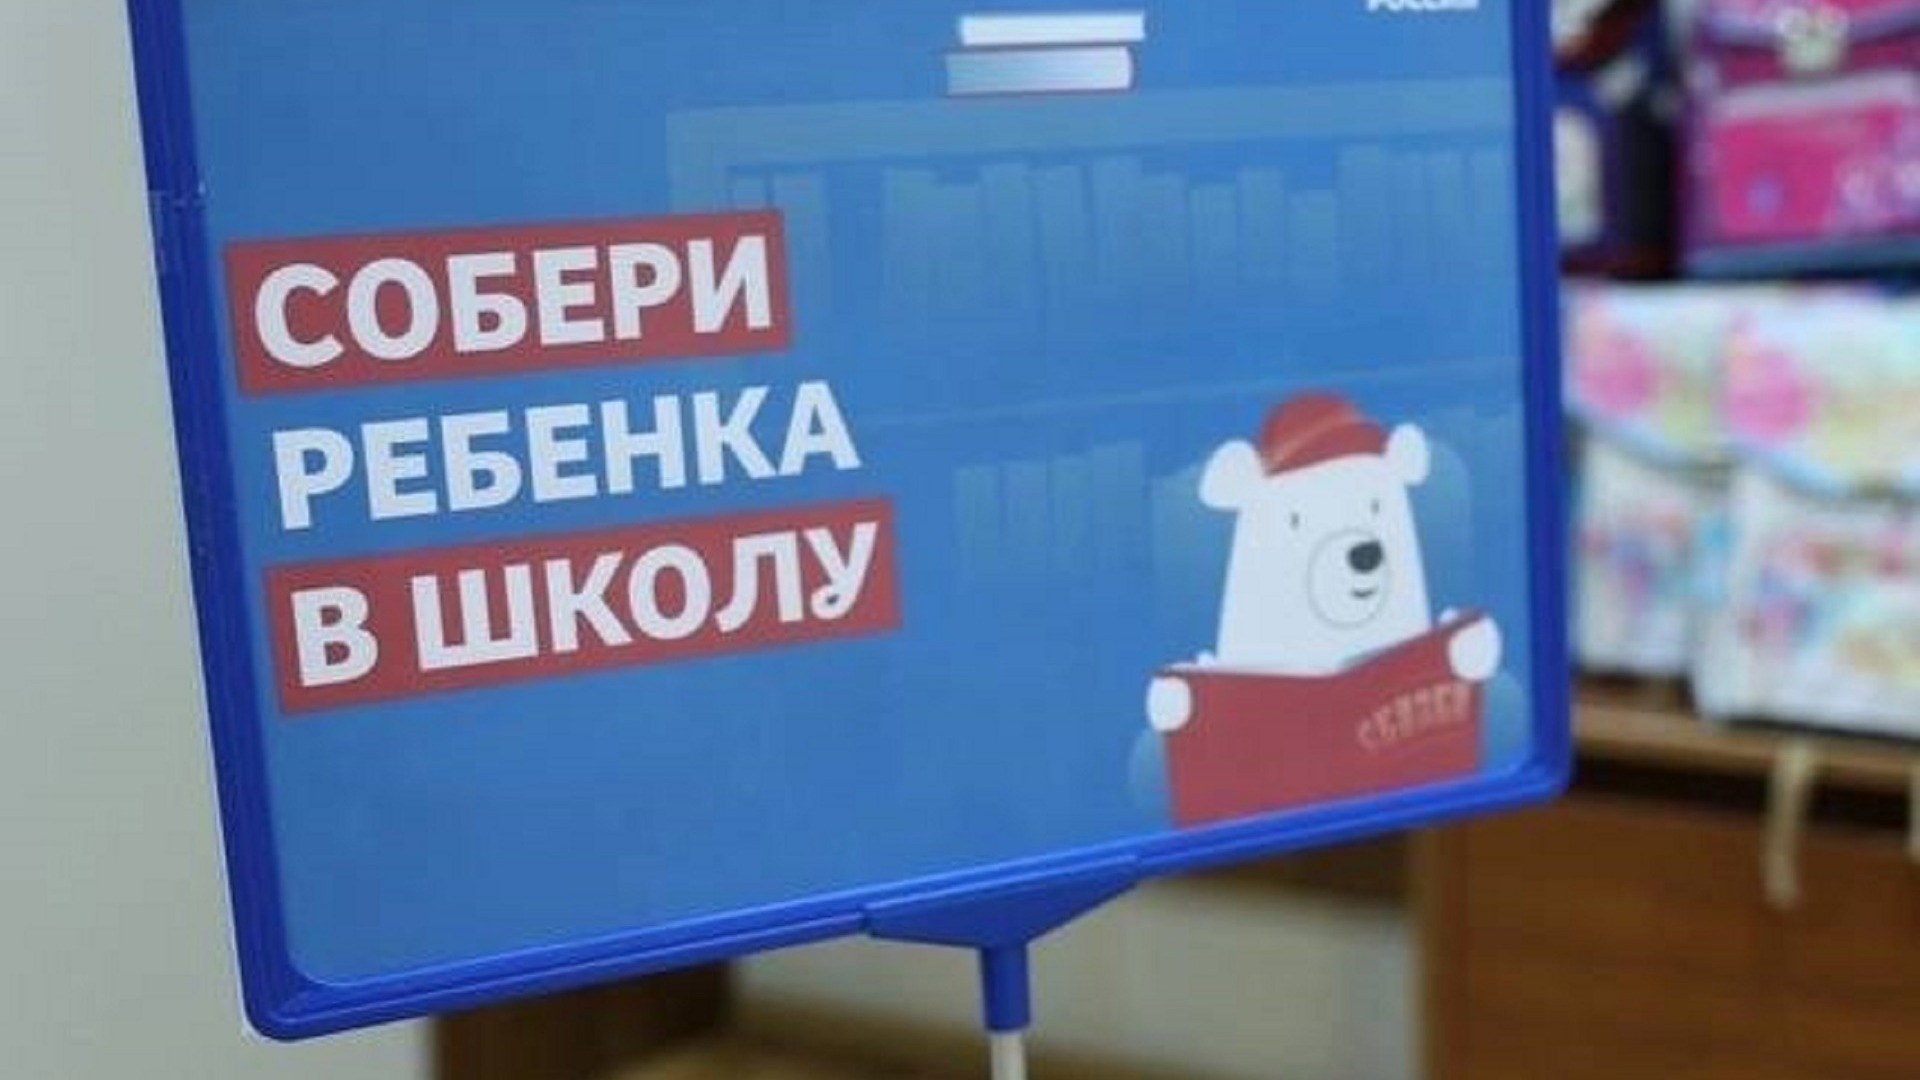 В Ижевске запустили благотворительную акцию «Собери ребенка в школу»